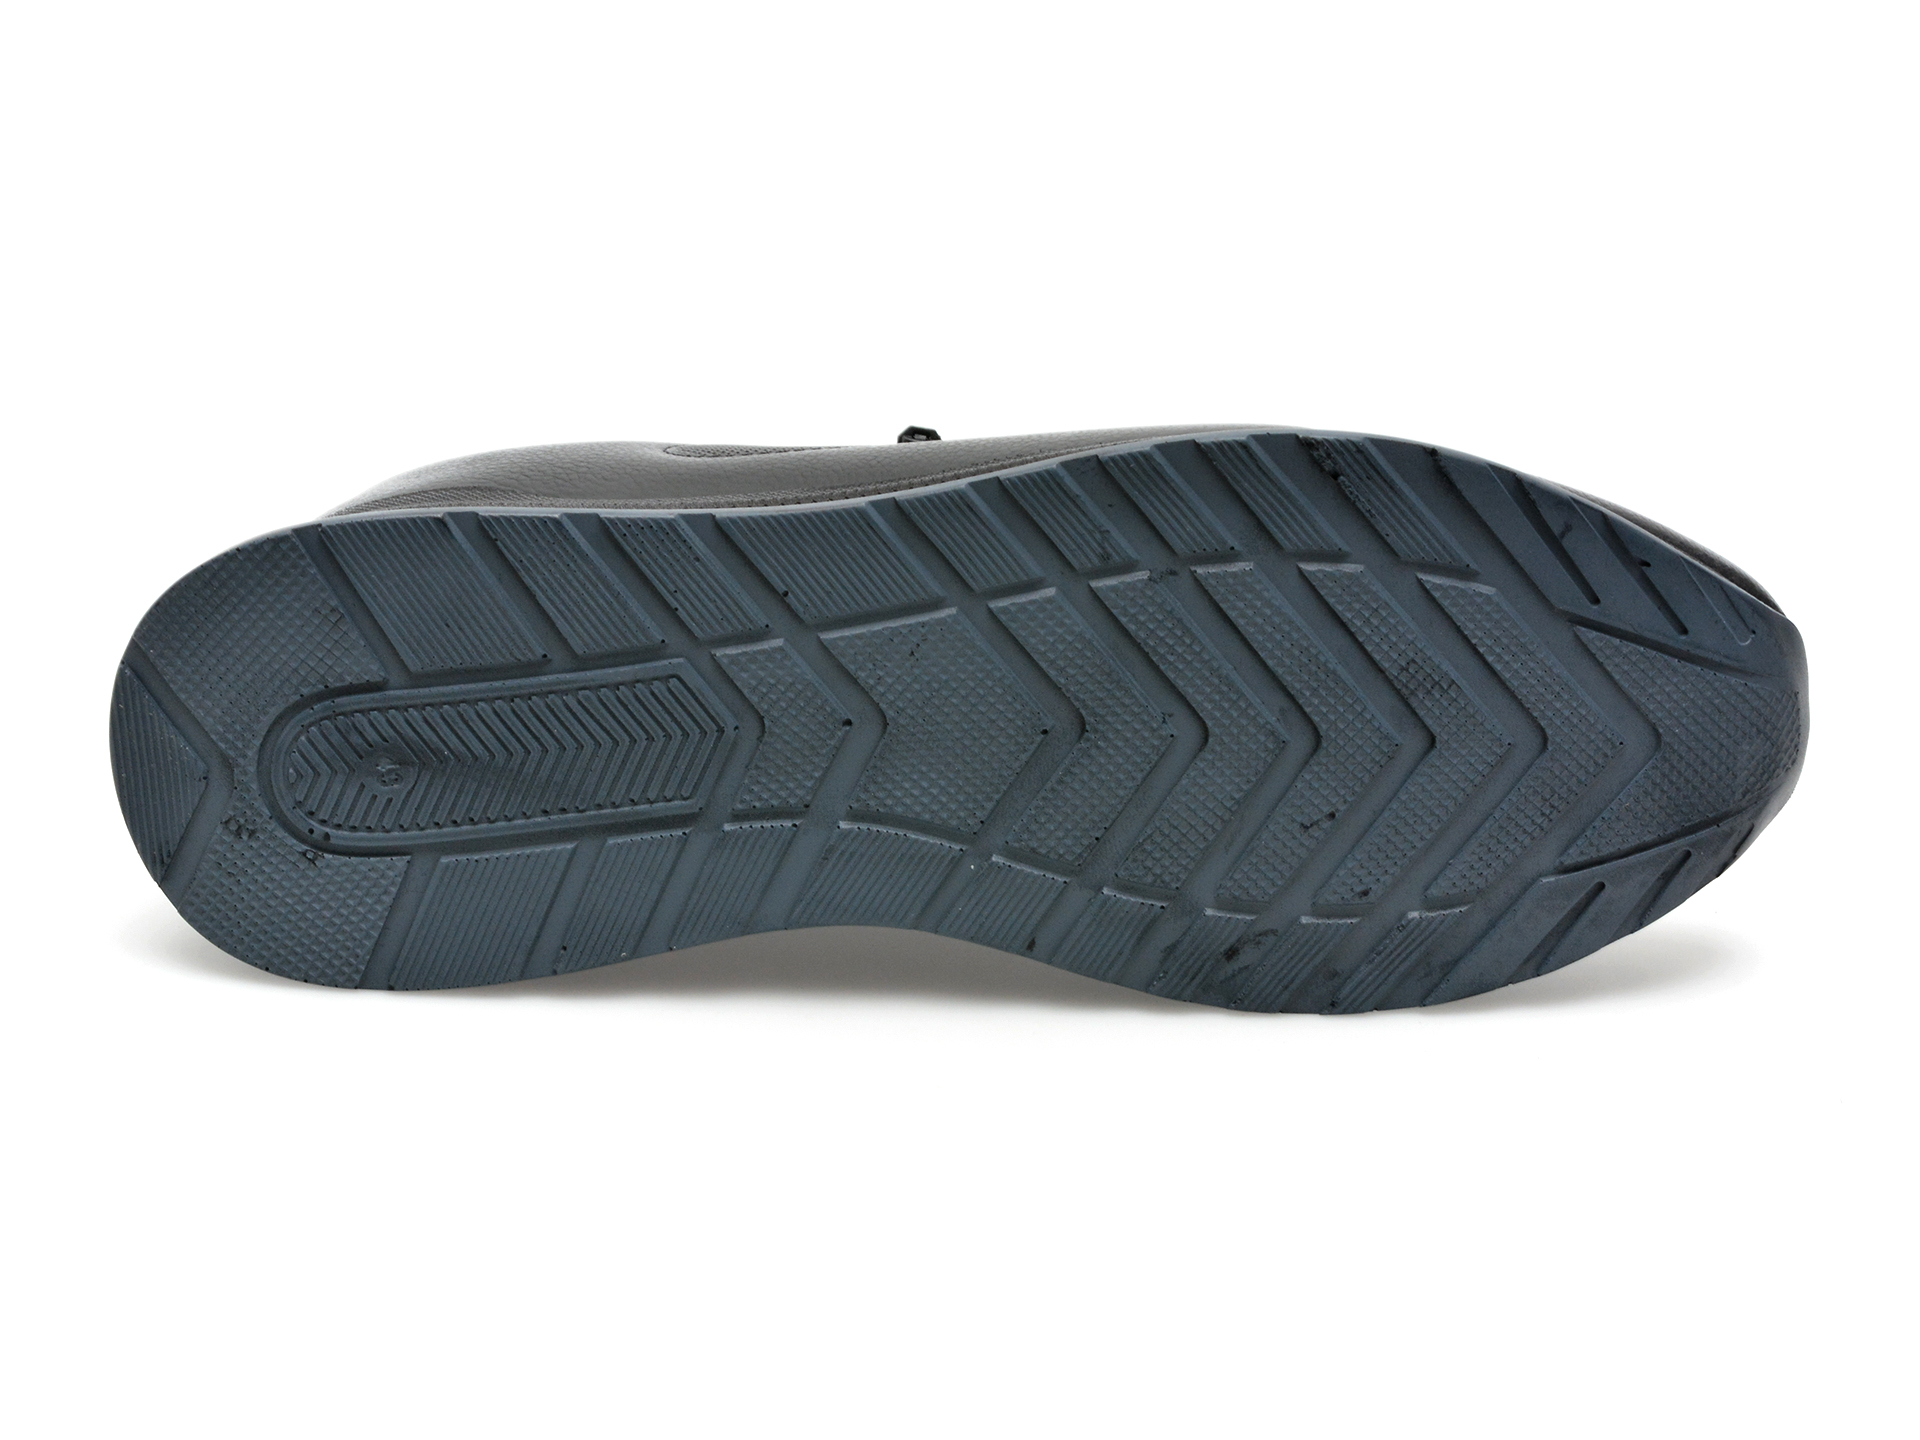 Pantofi AXXELLL negri, OY503A, din piele naturala